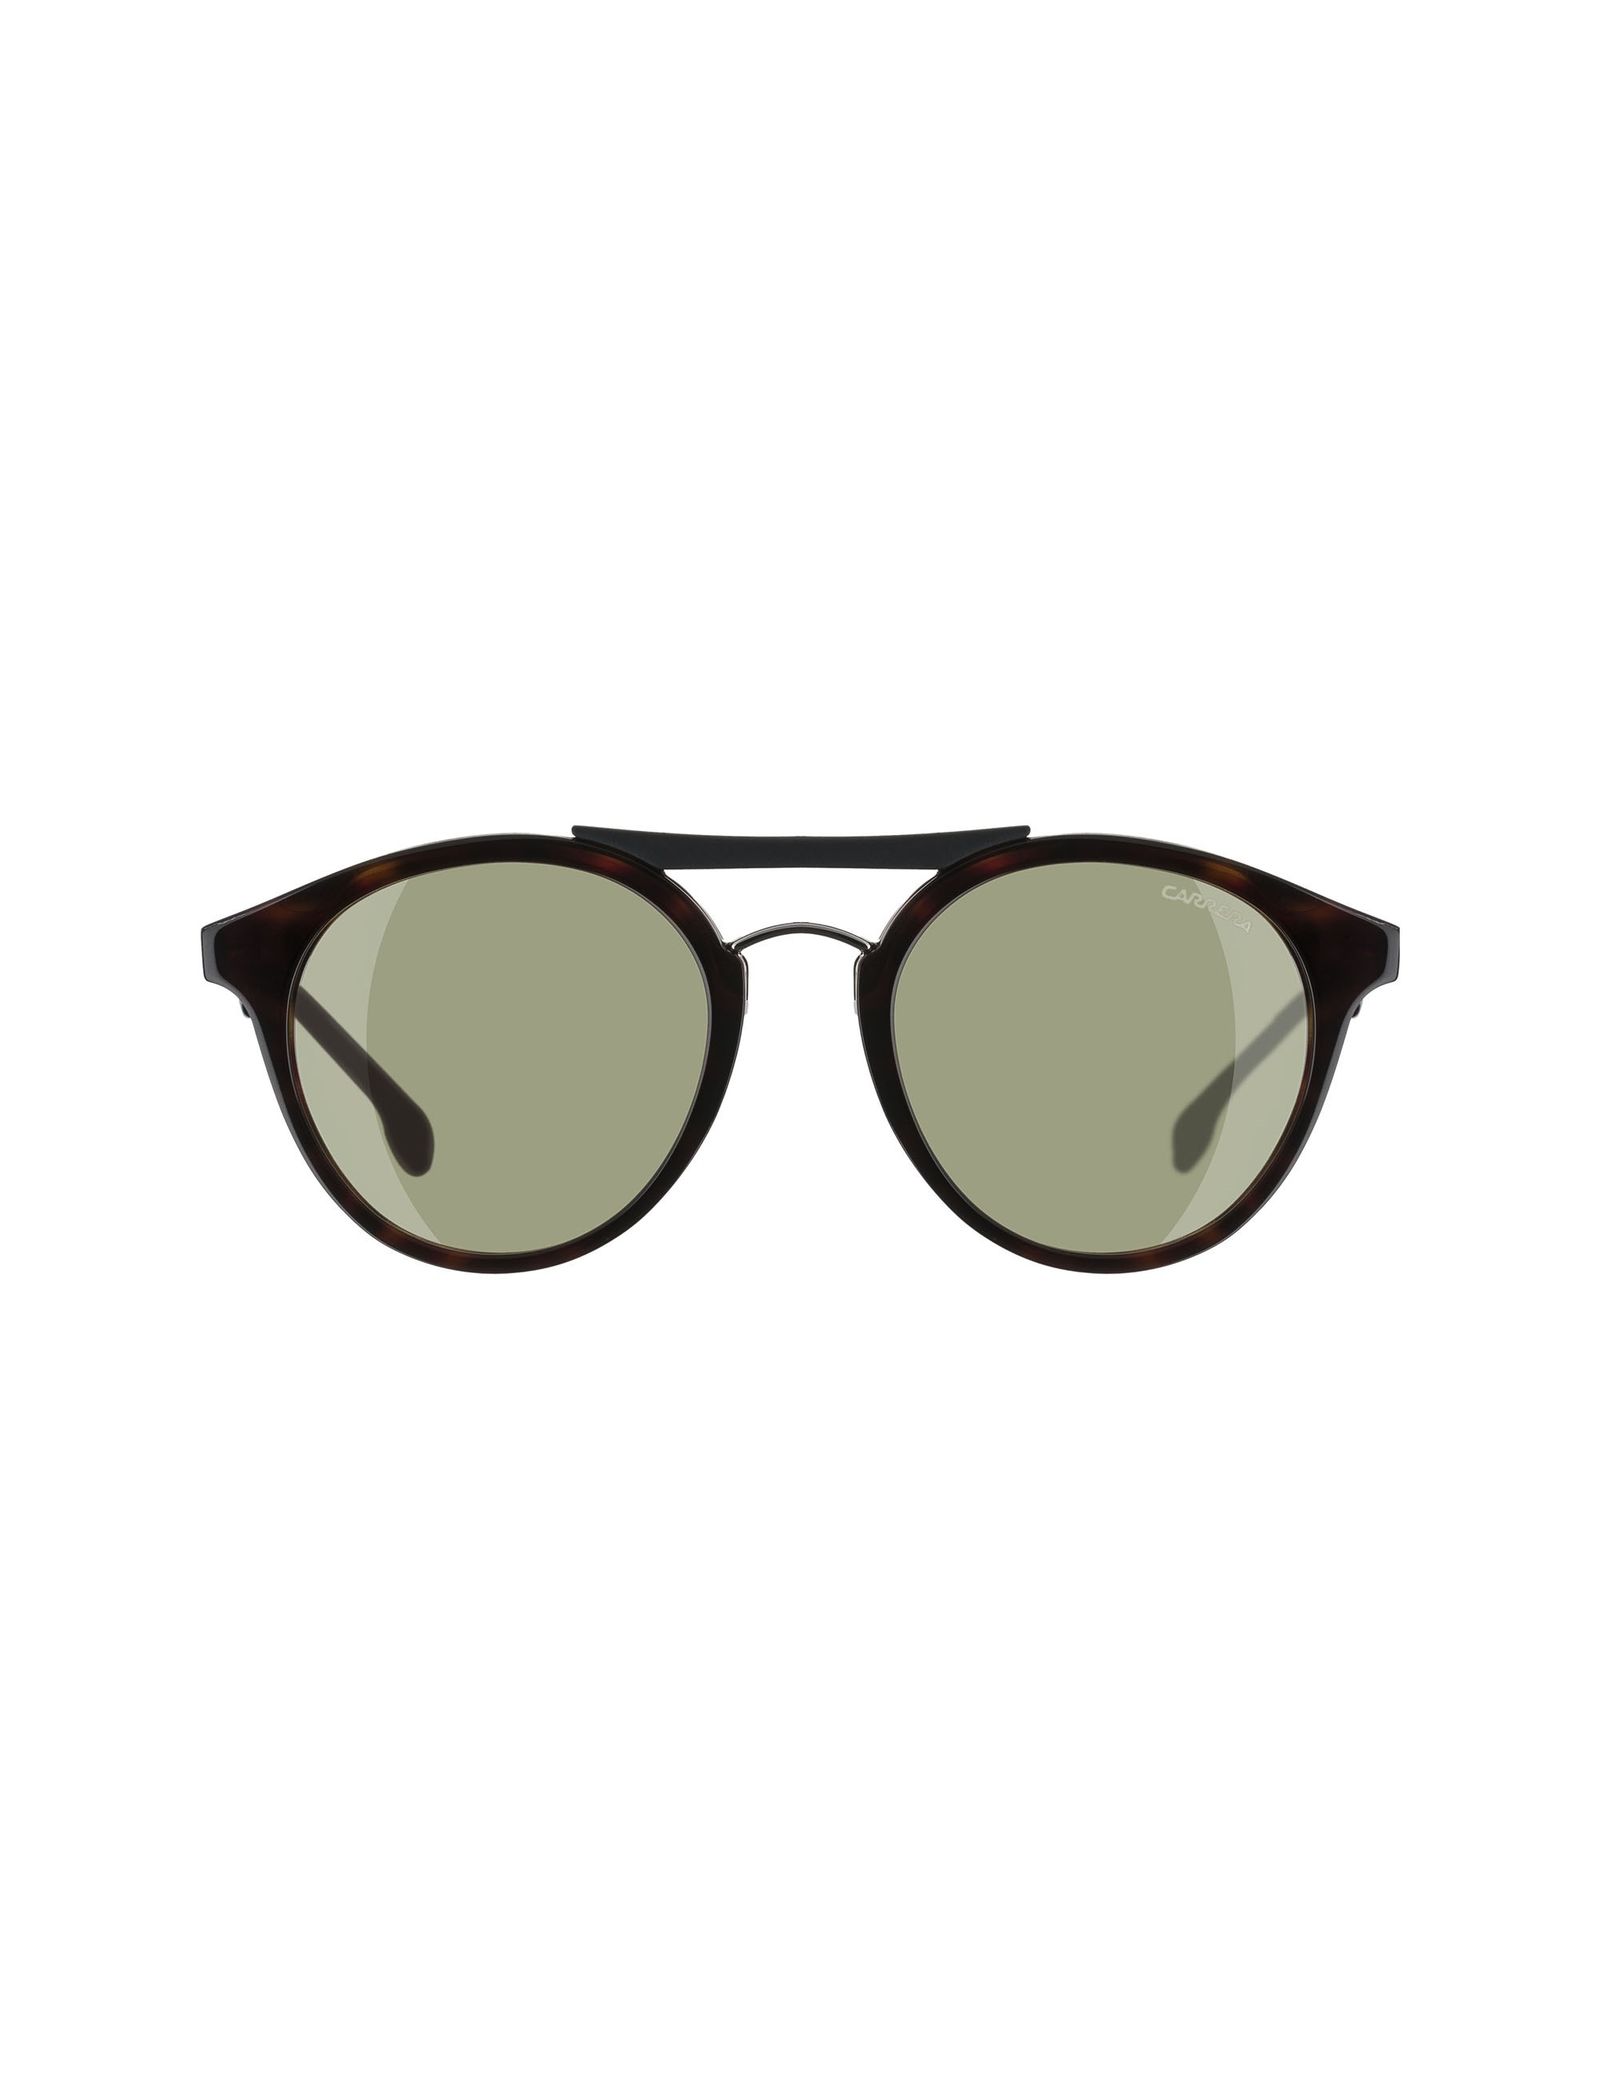 عینک آفتابی پنتوس بزرگسال - کاررا - قهوه اي لاک پشتي - 1